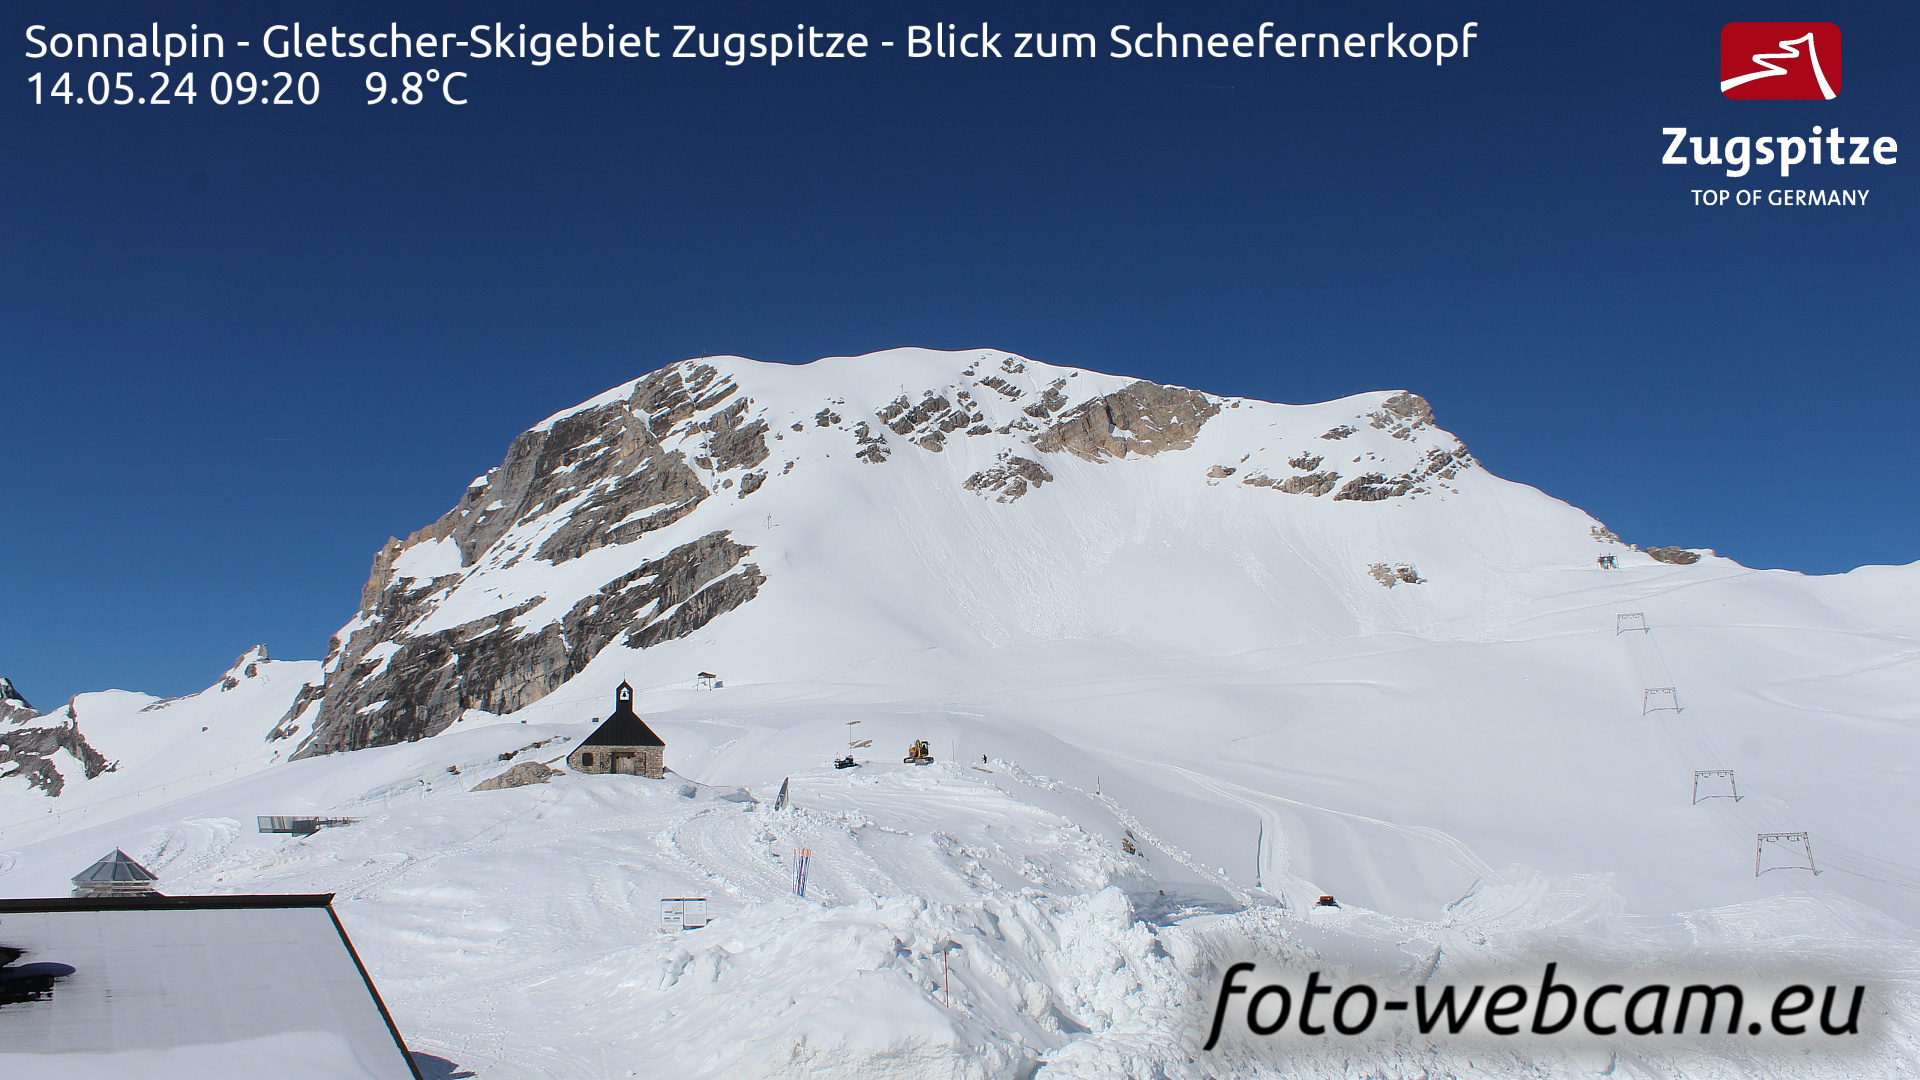 Zugspitze Wed. 09:24